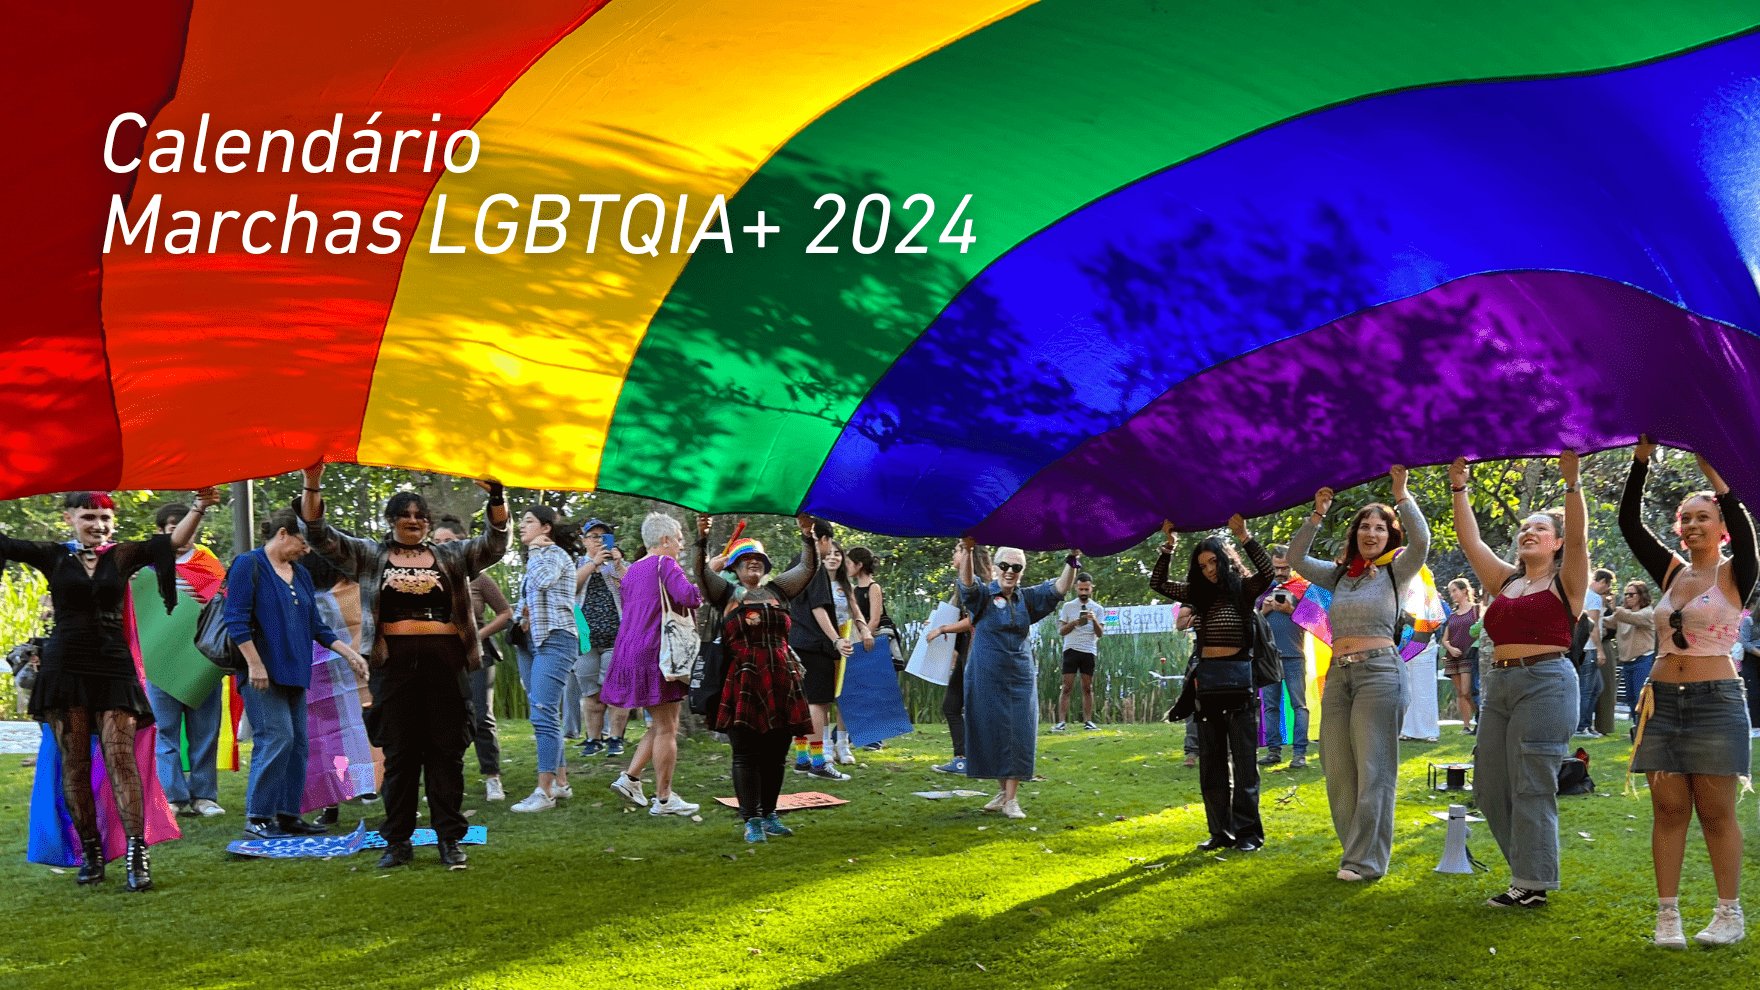 Calendário de Marchas LGBTQIA+ 2024 em Portugal